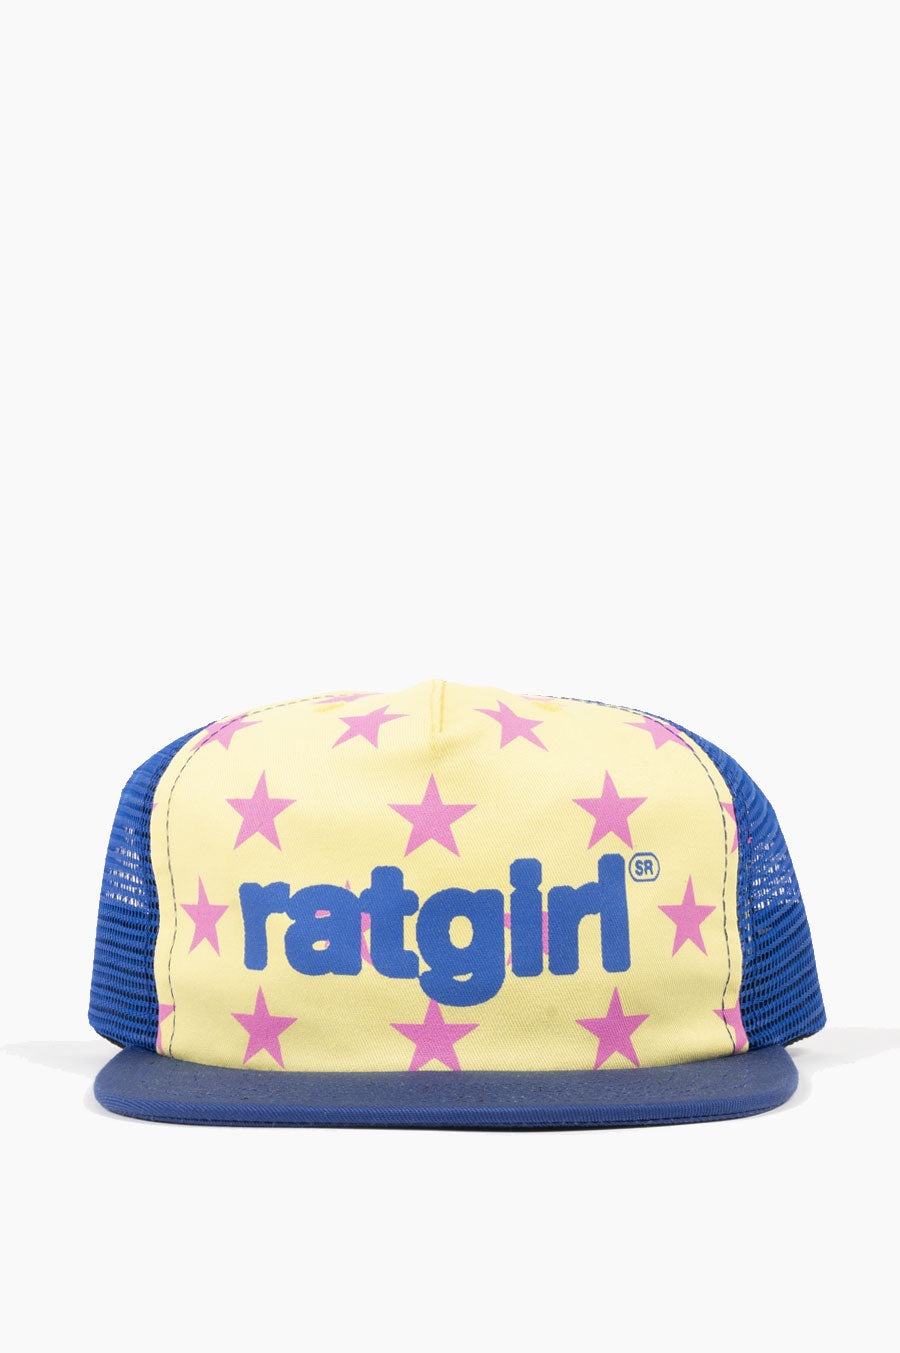 STRAY RATS RATGIRL STAR TRUCKER HAT BLUE